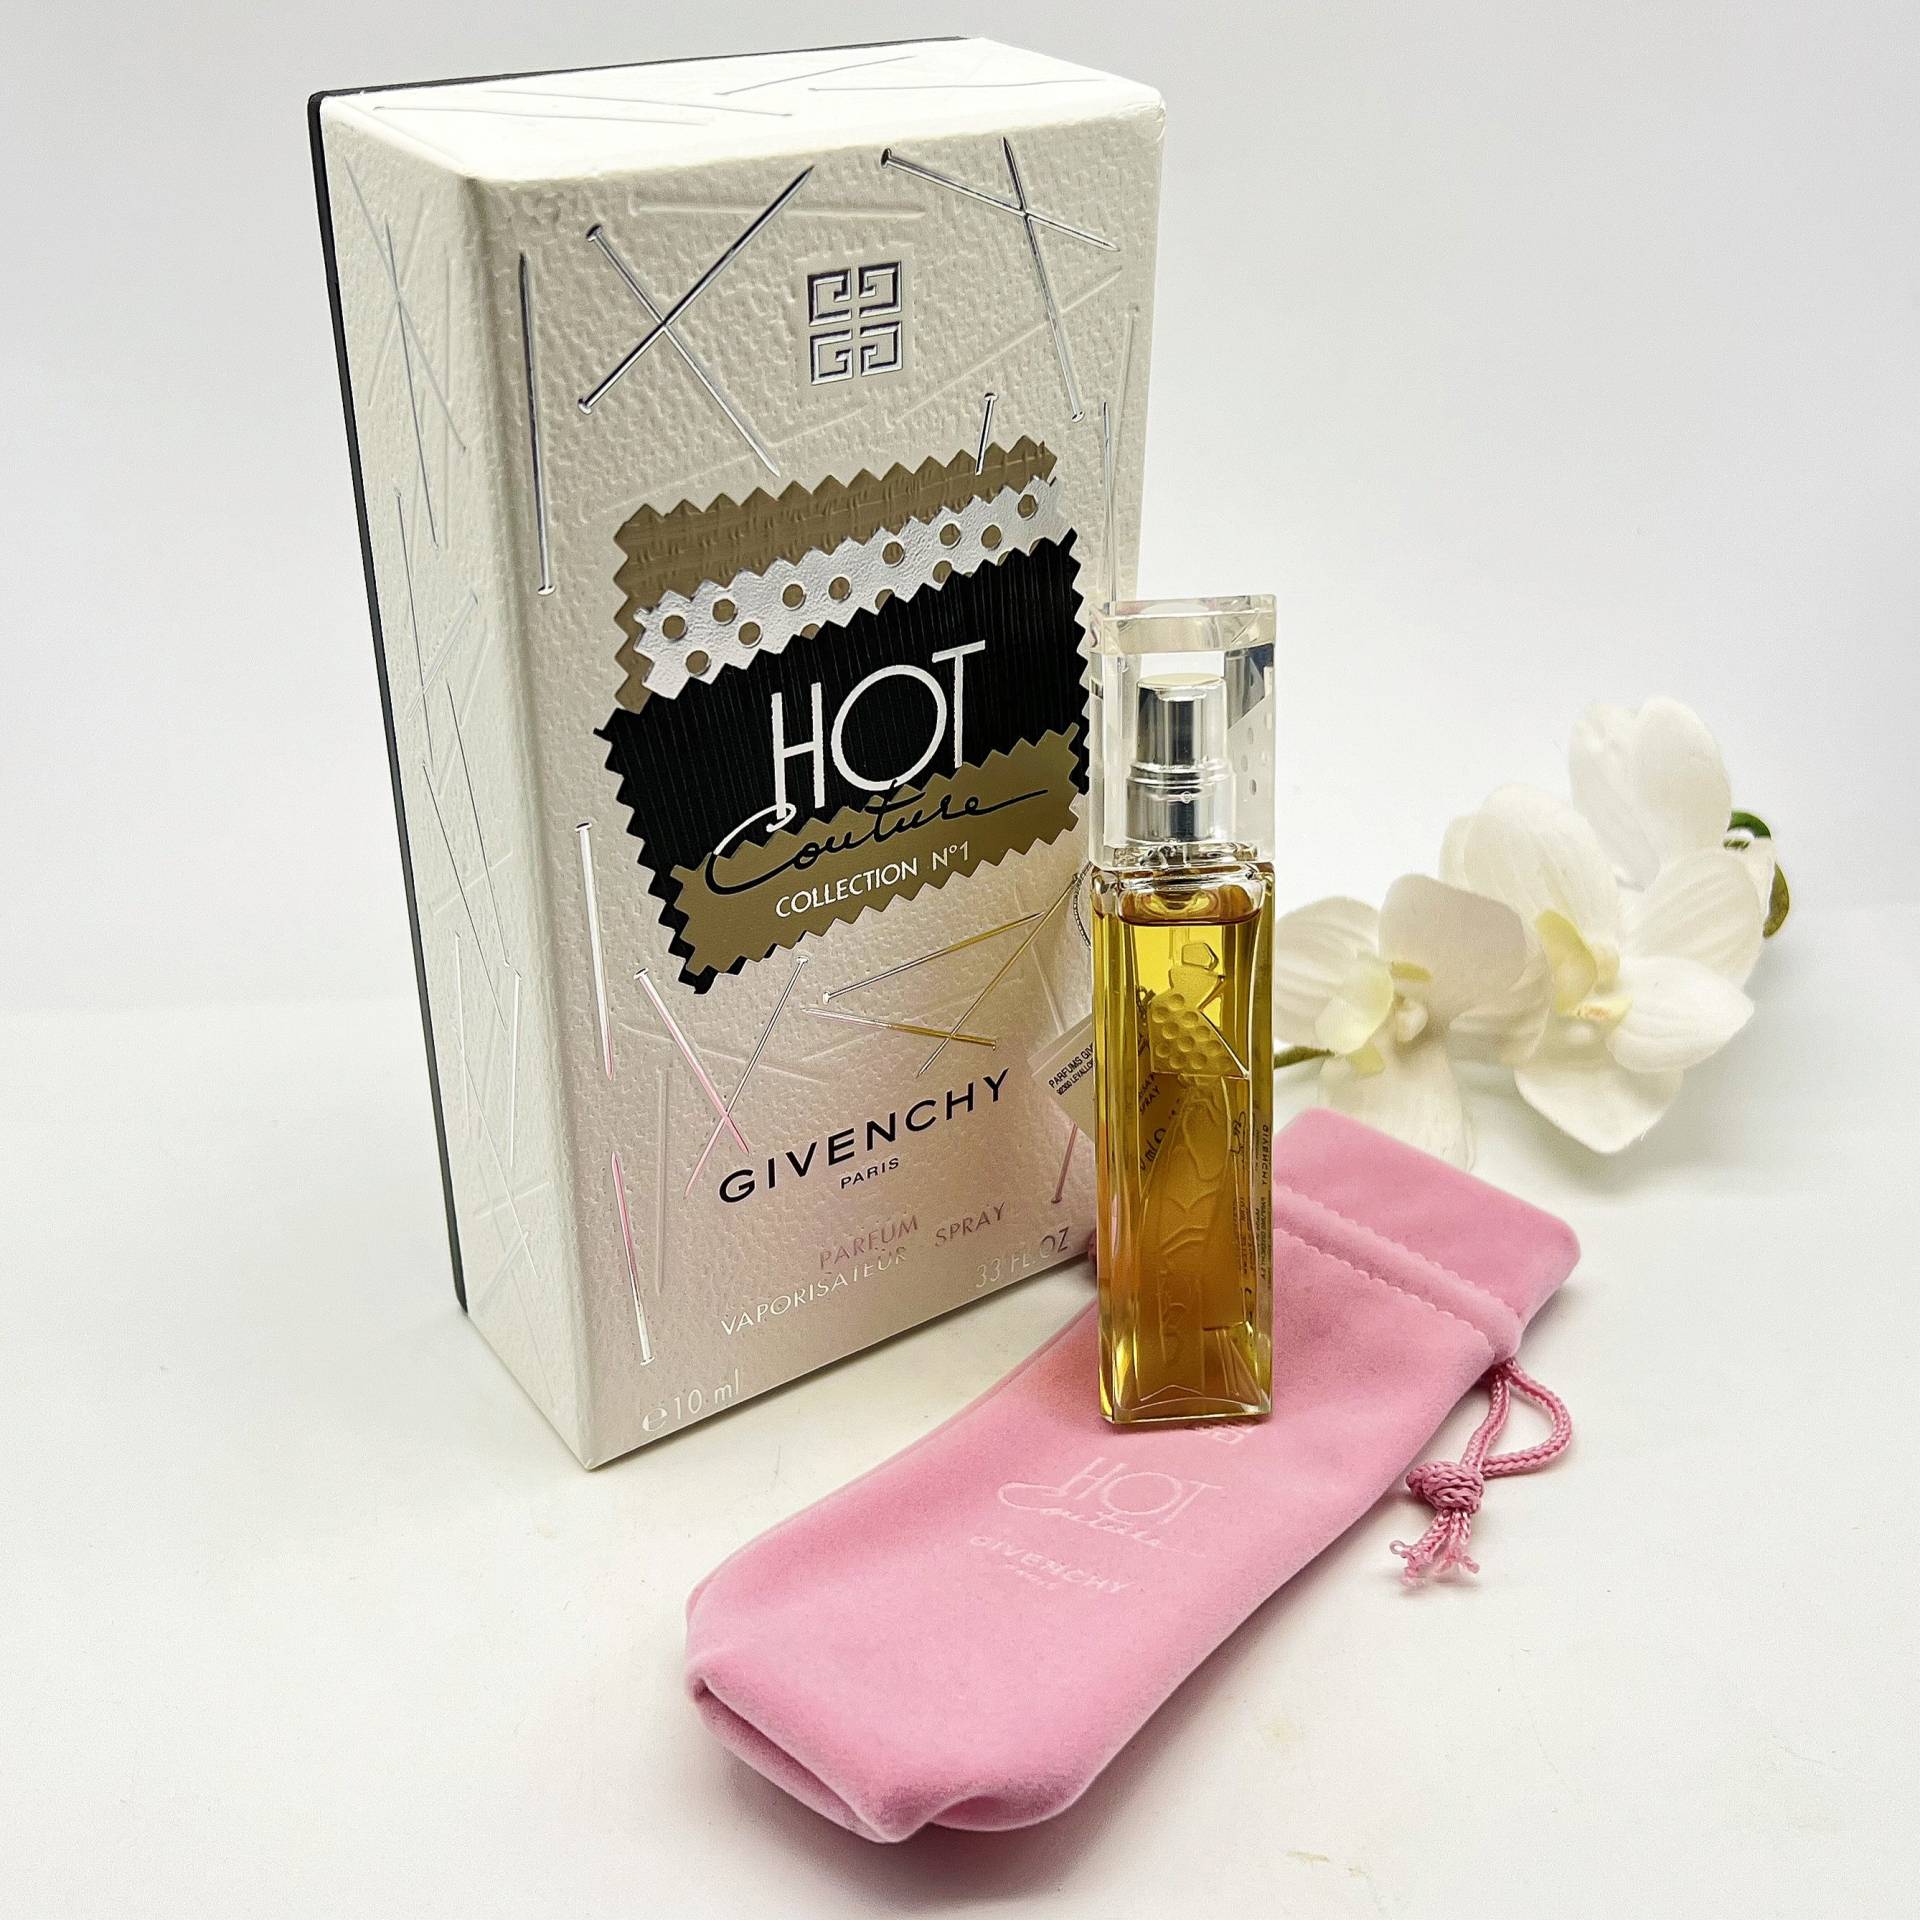 Hot Couture Kollektion No 1 Gegebenen Chy Parfum/Extrait 10Ml Spray Vintage | 2000 Selten Parfüm Für Frauen von Etsy - VintageItalienstyle